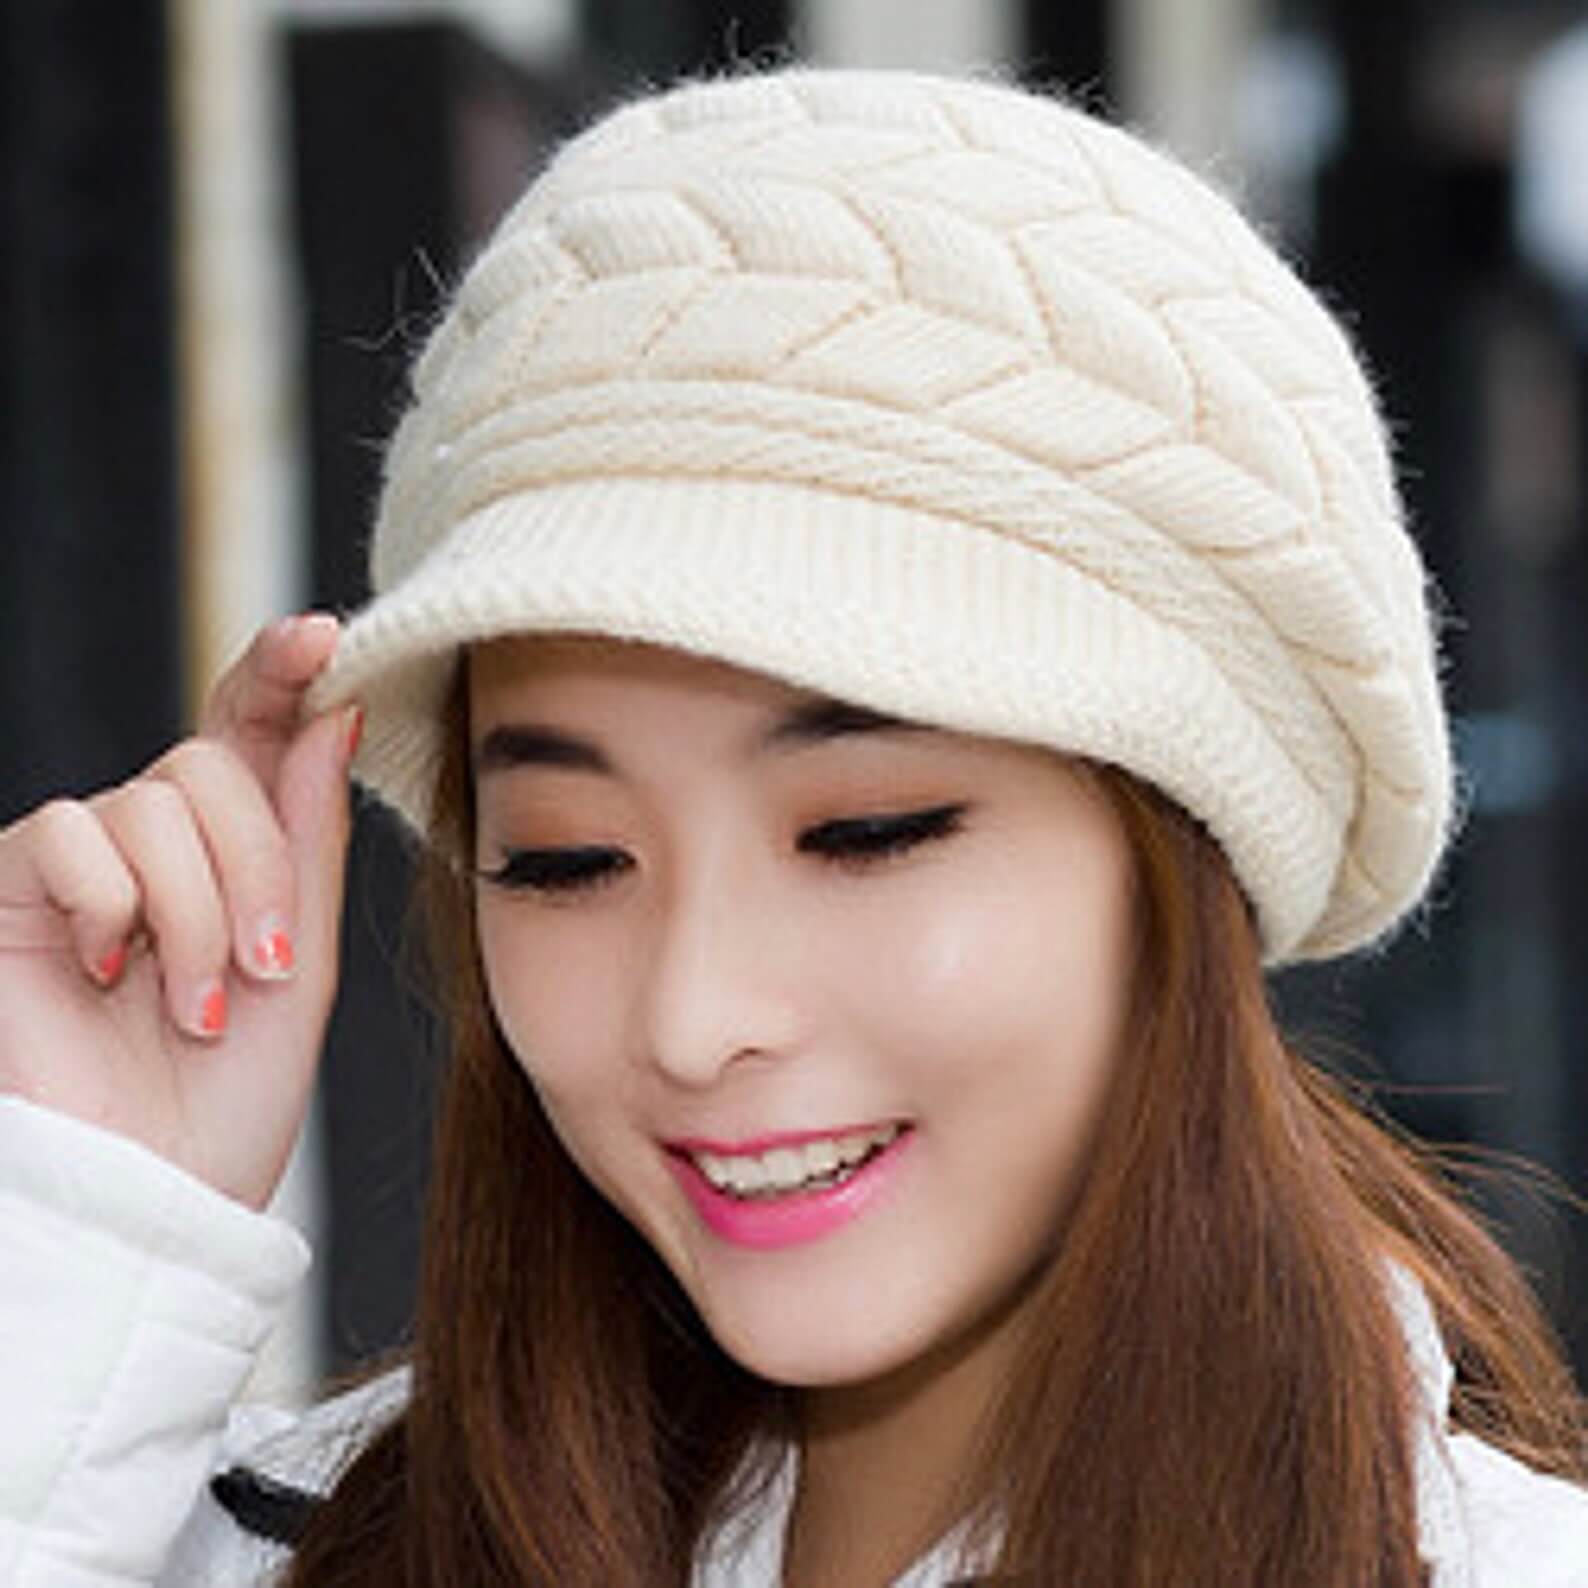 Women's Winter Beret Beanie Hat in Knitted Fleece